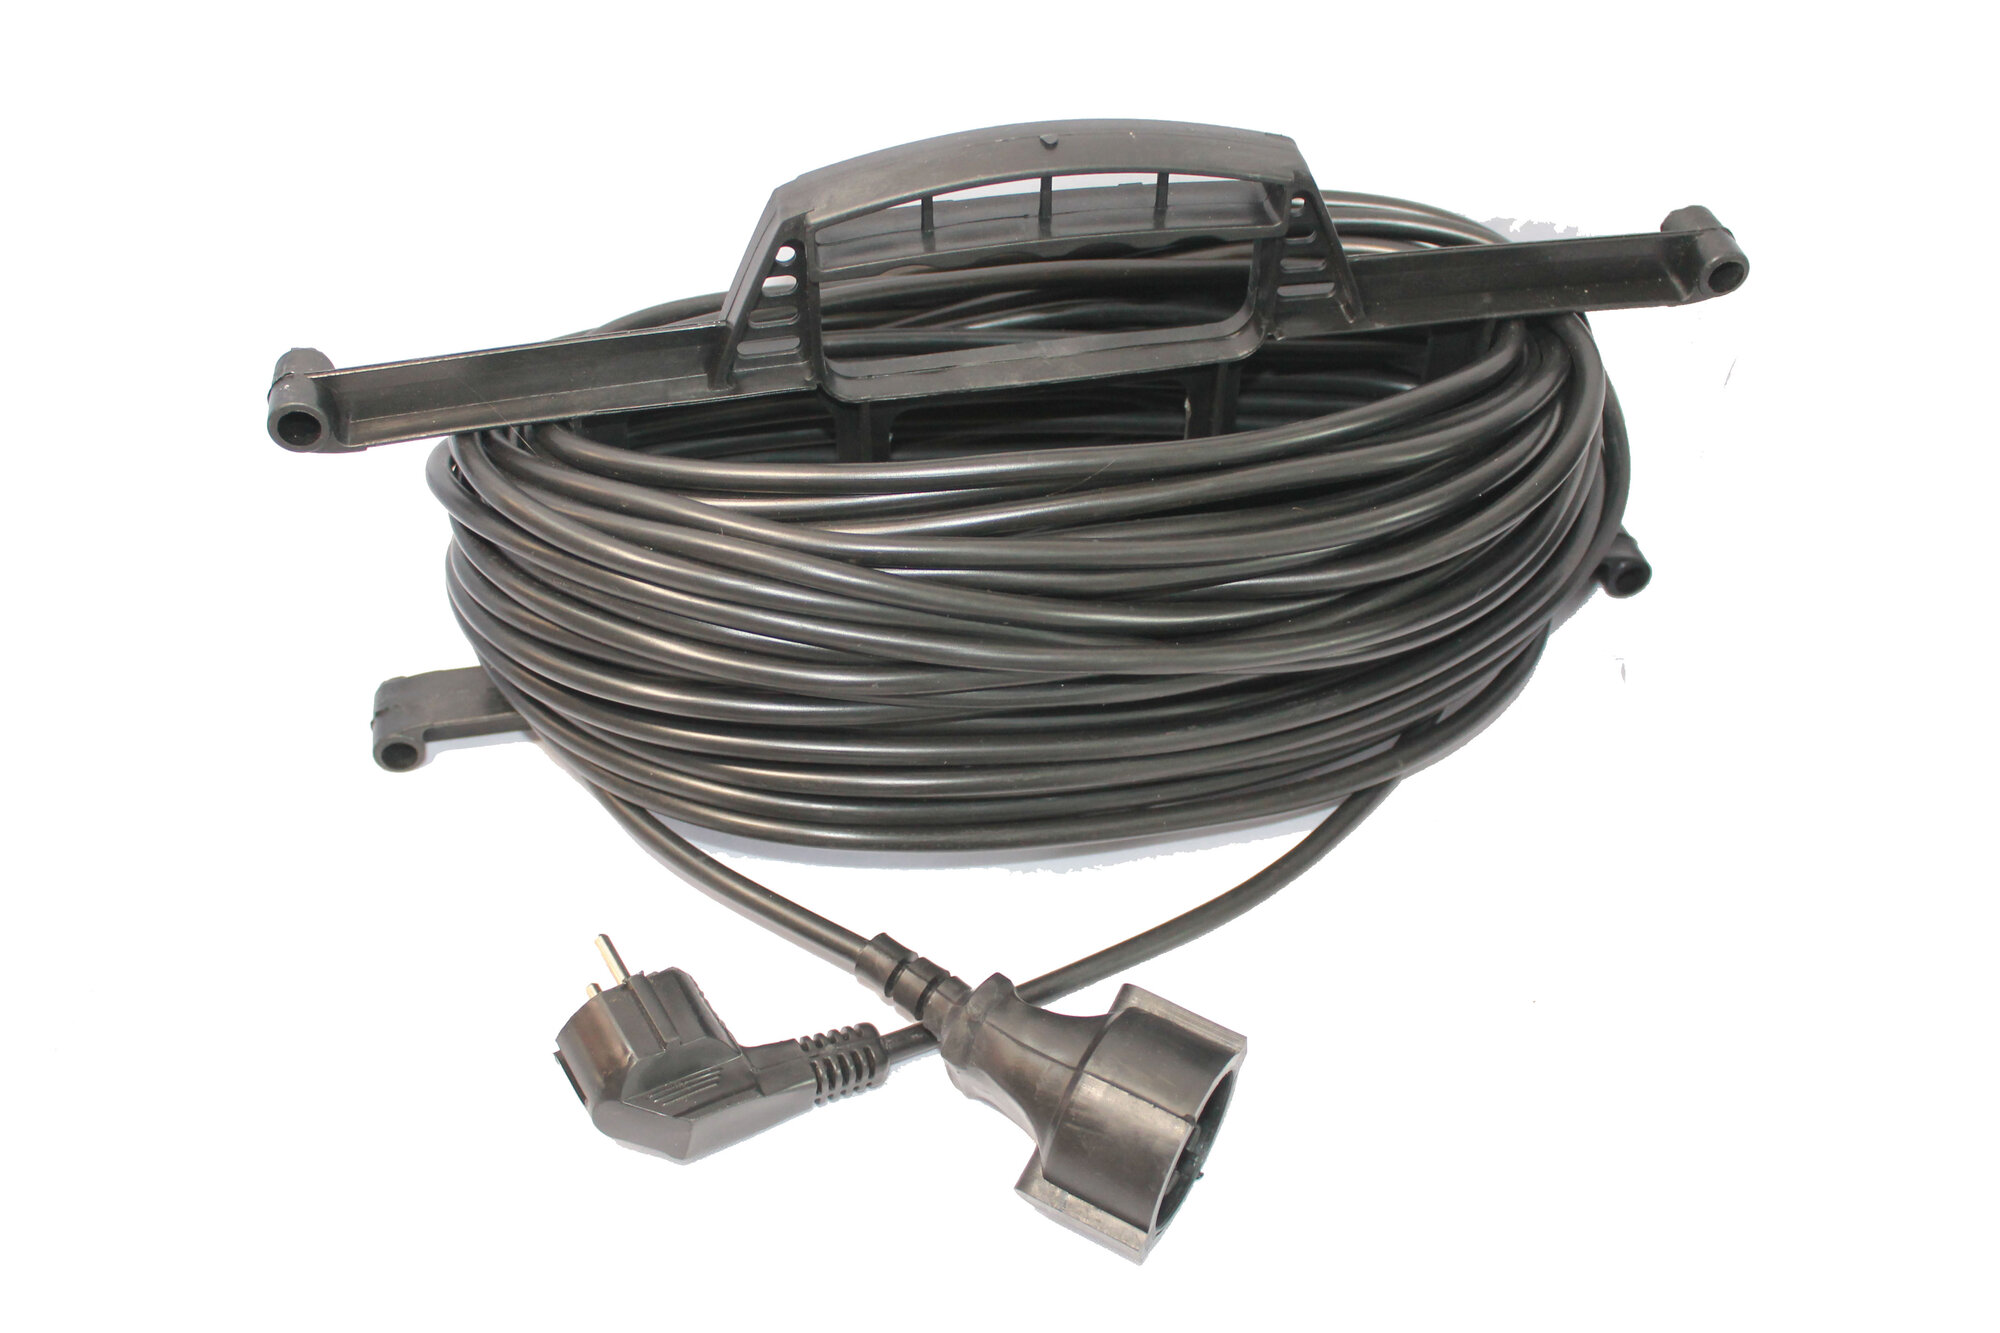 Удлинитель на рамке, длина 16м (кабель ПВС 2*1,5 ) 16 м, модель джетт 1 электрический, сетевой, садовы